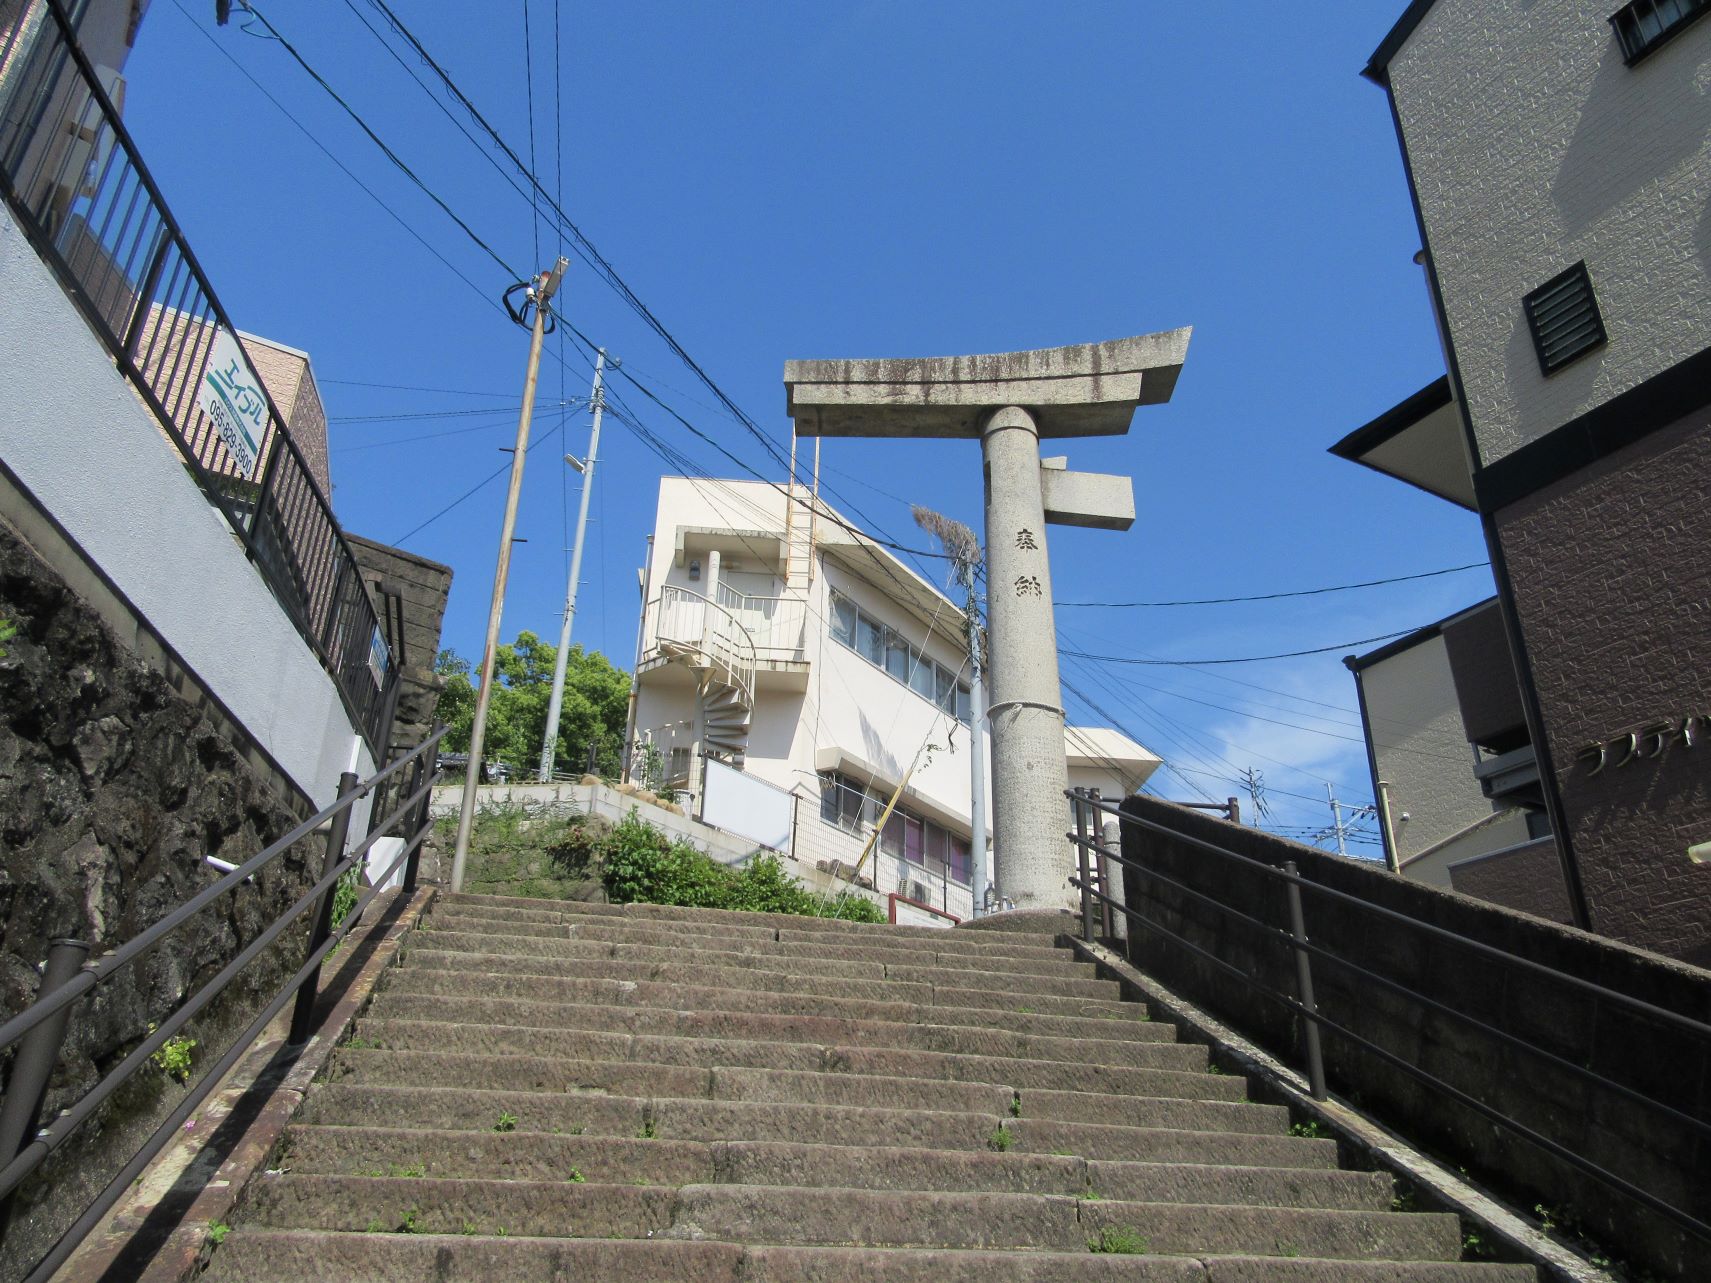 長崎市の山王神社の片足鳥居。